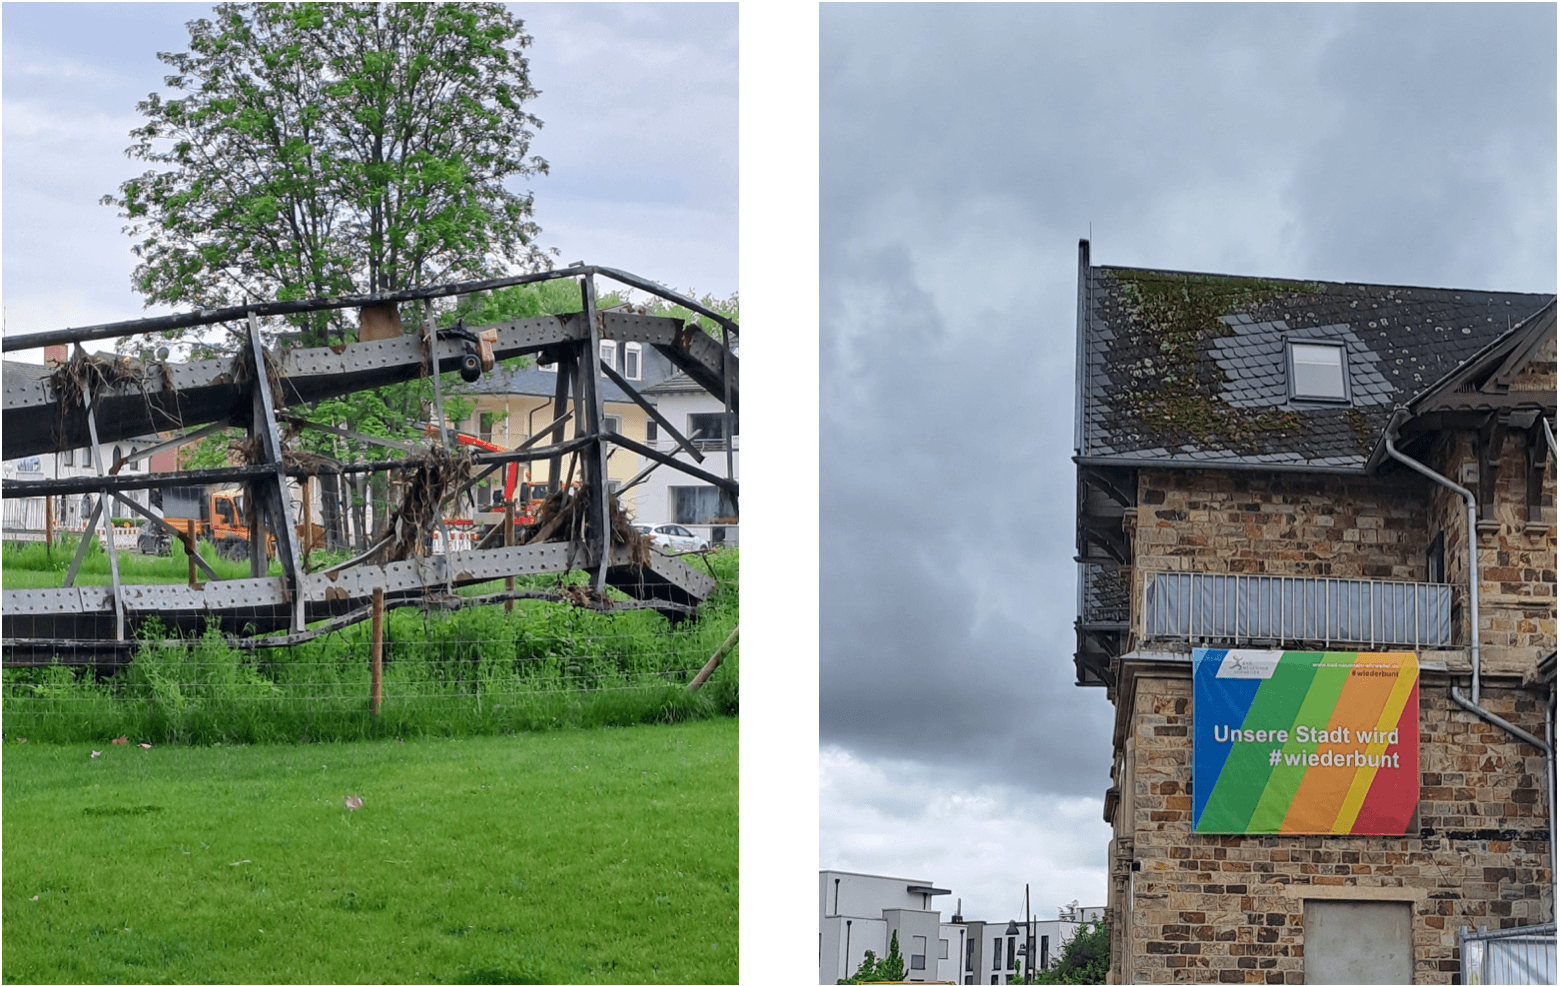 Bild links von der Ahrflut zerstörte Brücke im Kurpark Bad Neuenahr, Bild rechts Wiederaufbau und Neugestaltung der Stadt